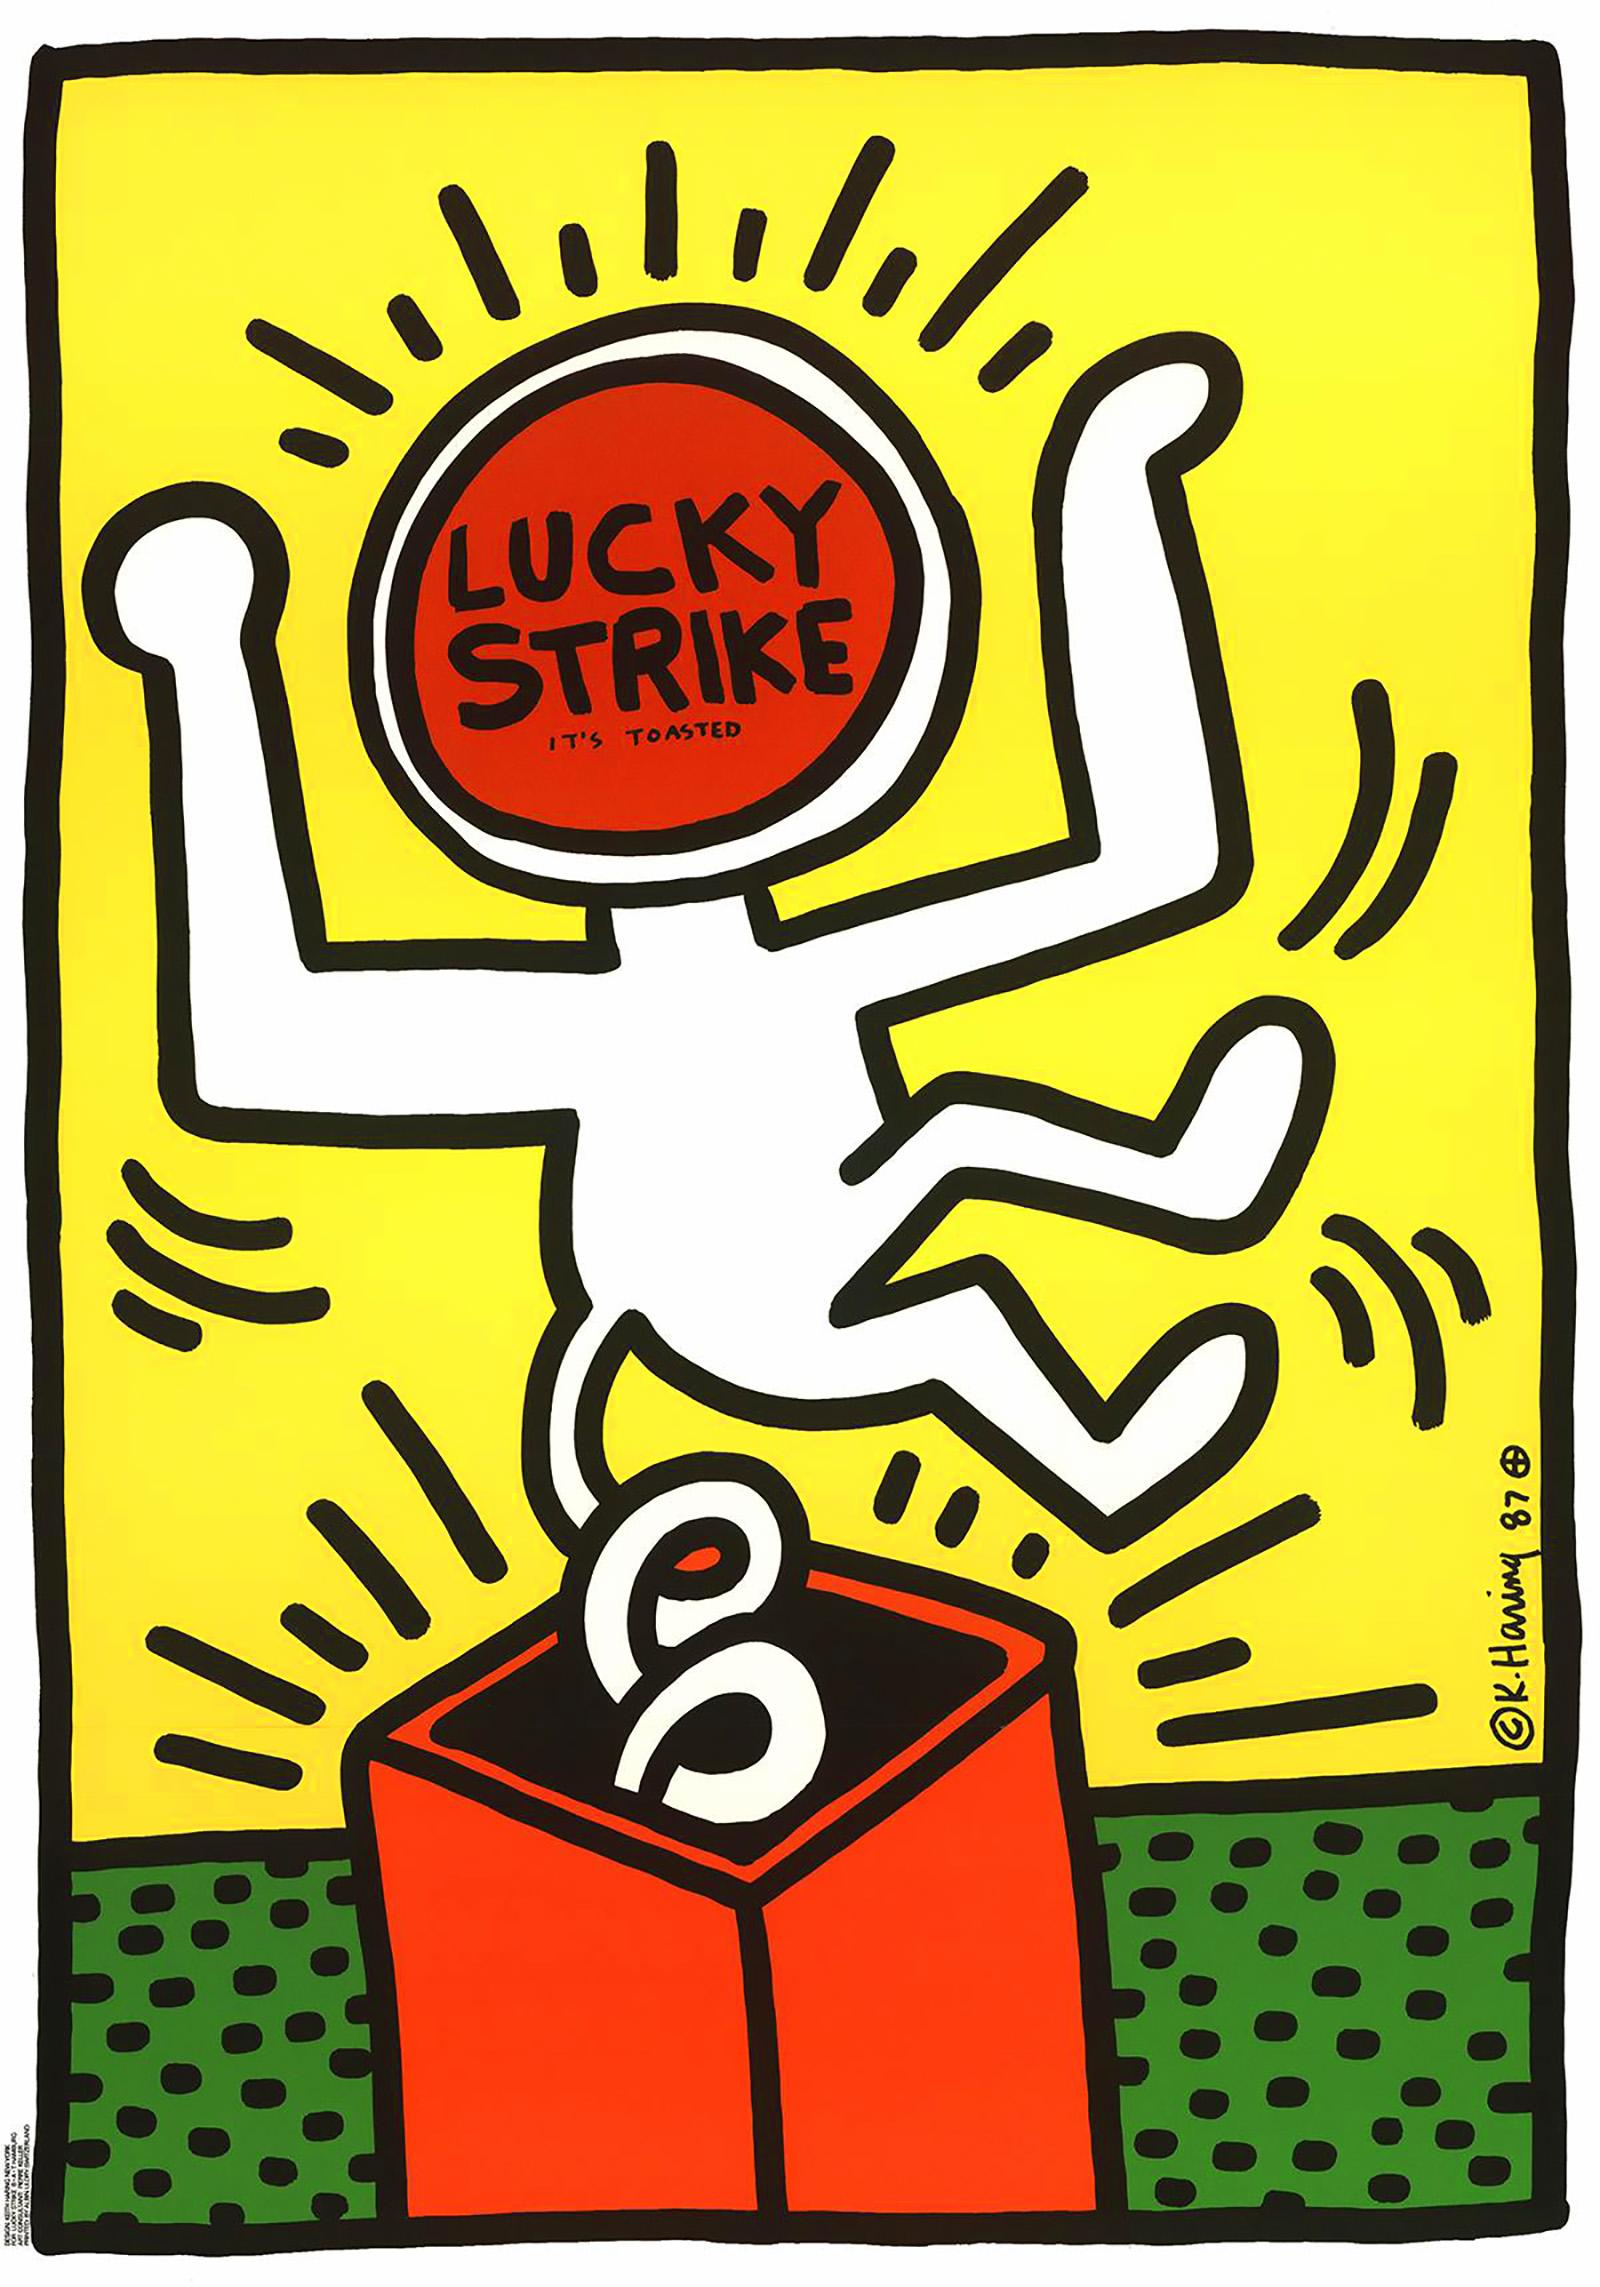 Keith Haring Lucky Strike Plakat 1987:
Vintage-Originalplakat von Keith Haring aus den 1980er Jahren, entworfen und illustriert von Haring im Auftrag der langjährigen Zigarettenmarke Lucky Strike. Katalog Raisonne: Keith Haring: Plakate (Prestel